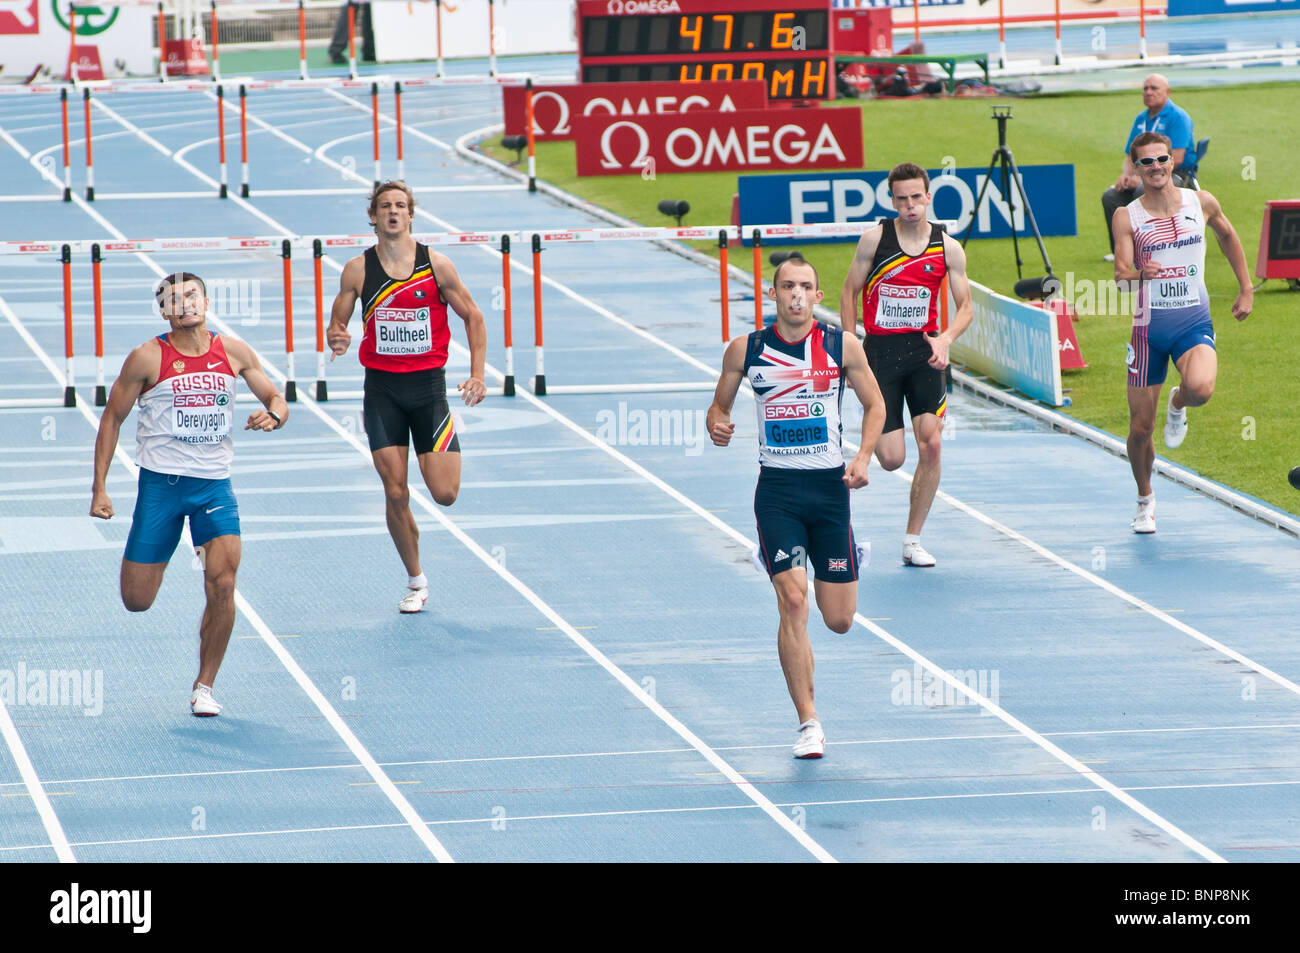 Le 29 juillet à Barcelone 2010 Championnats d'Europe d'athlétisme (400m haies hommes) Banque D'Images